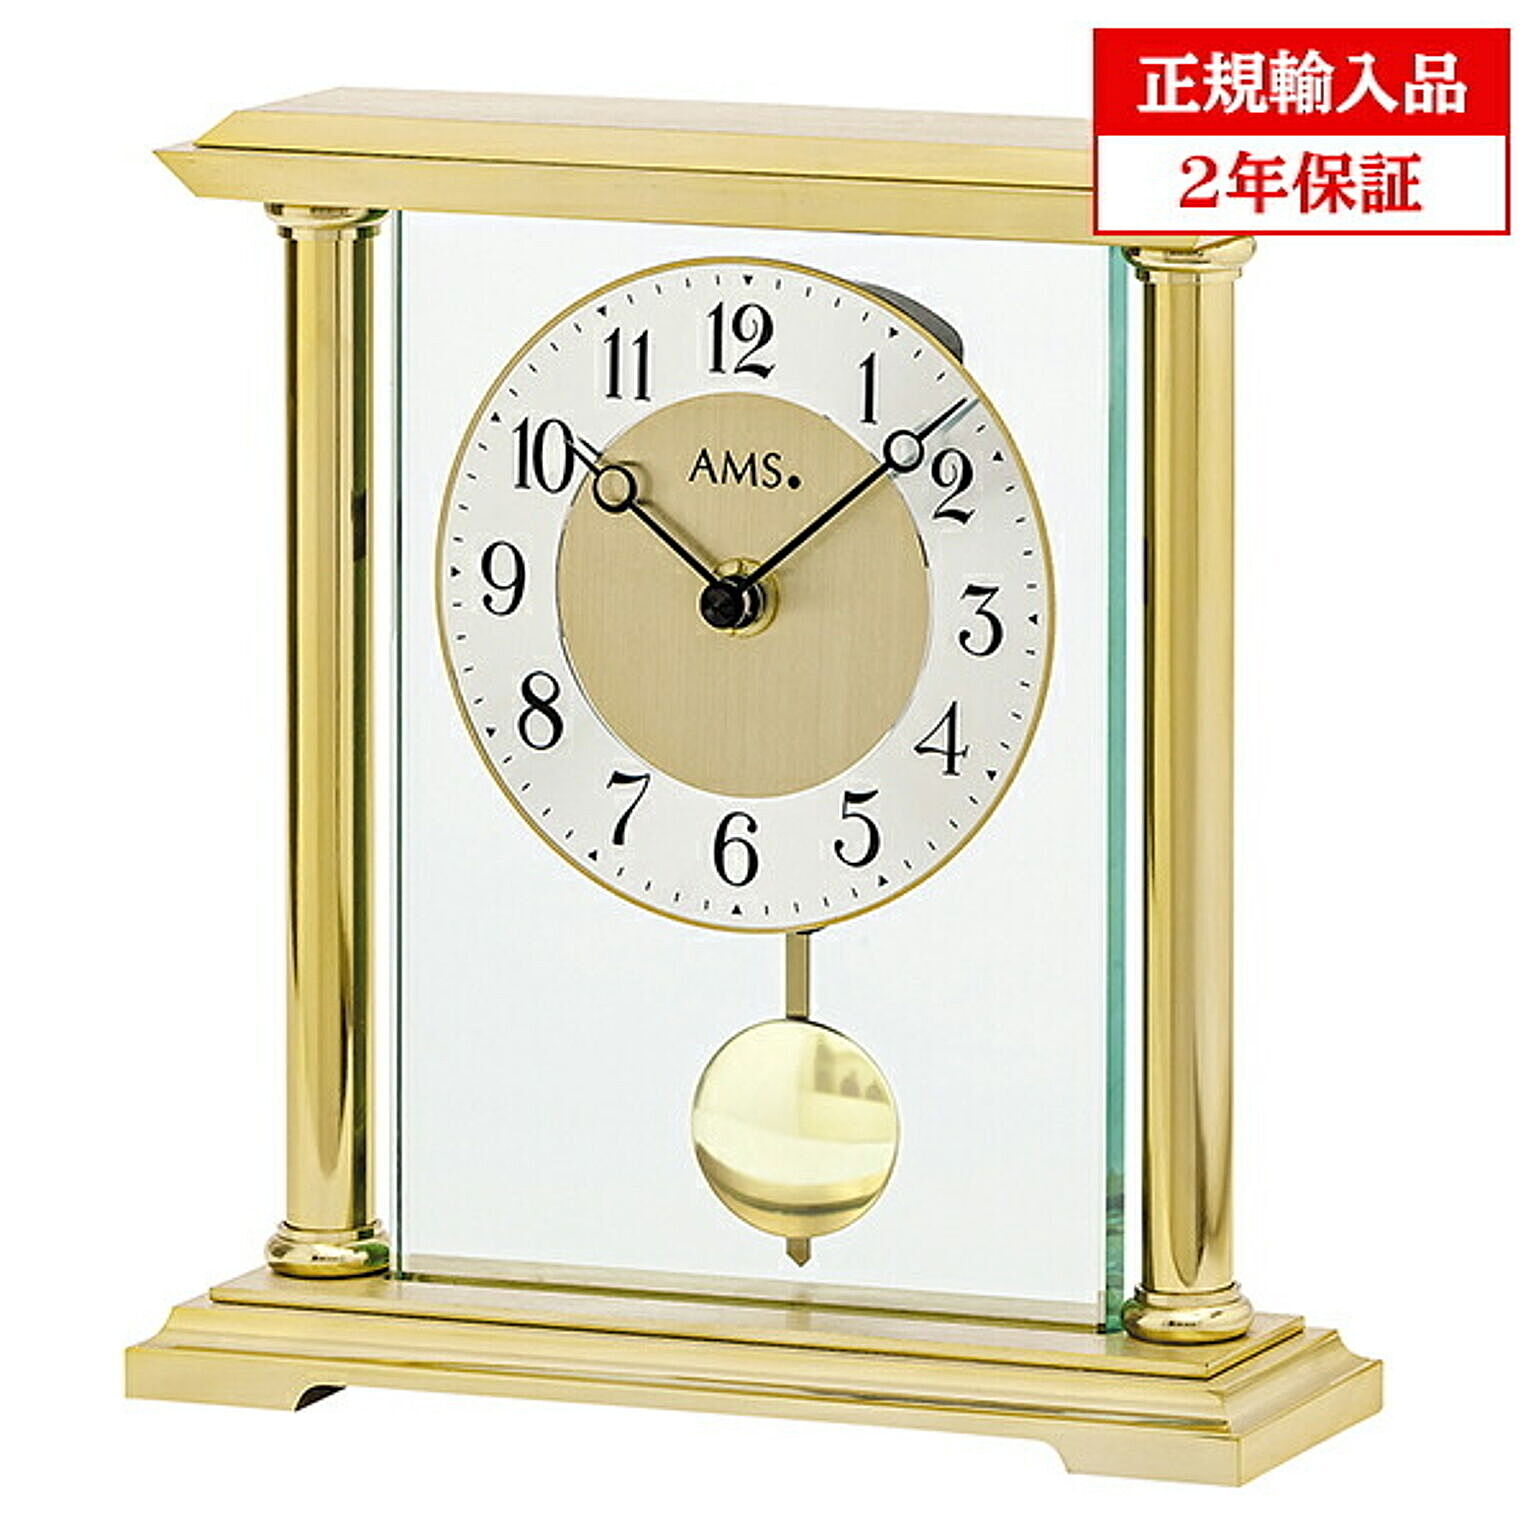 アームス社 AMS 1143 クオーツ 置き時計 (置時計) ゴールド ドイツ製 【正規輸入品】【メーカー保証2年】